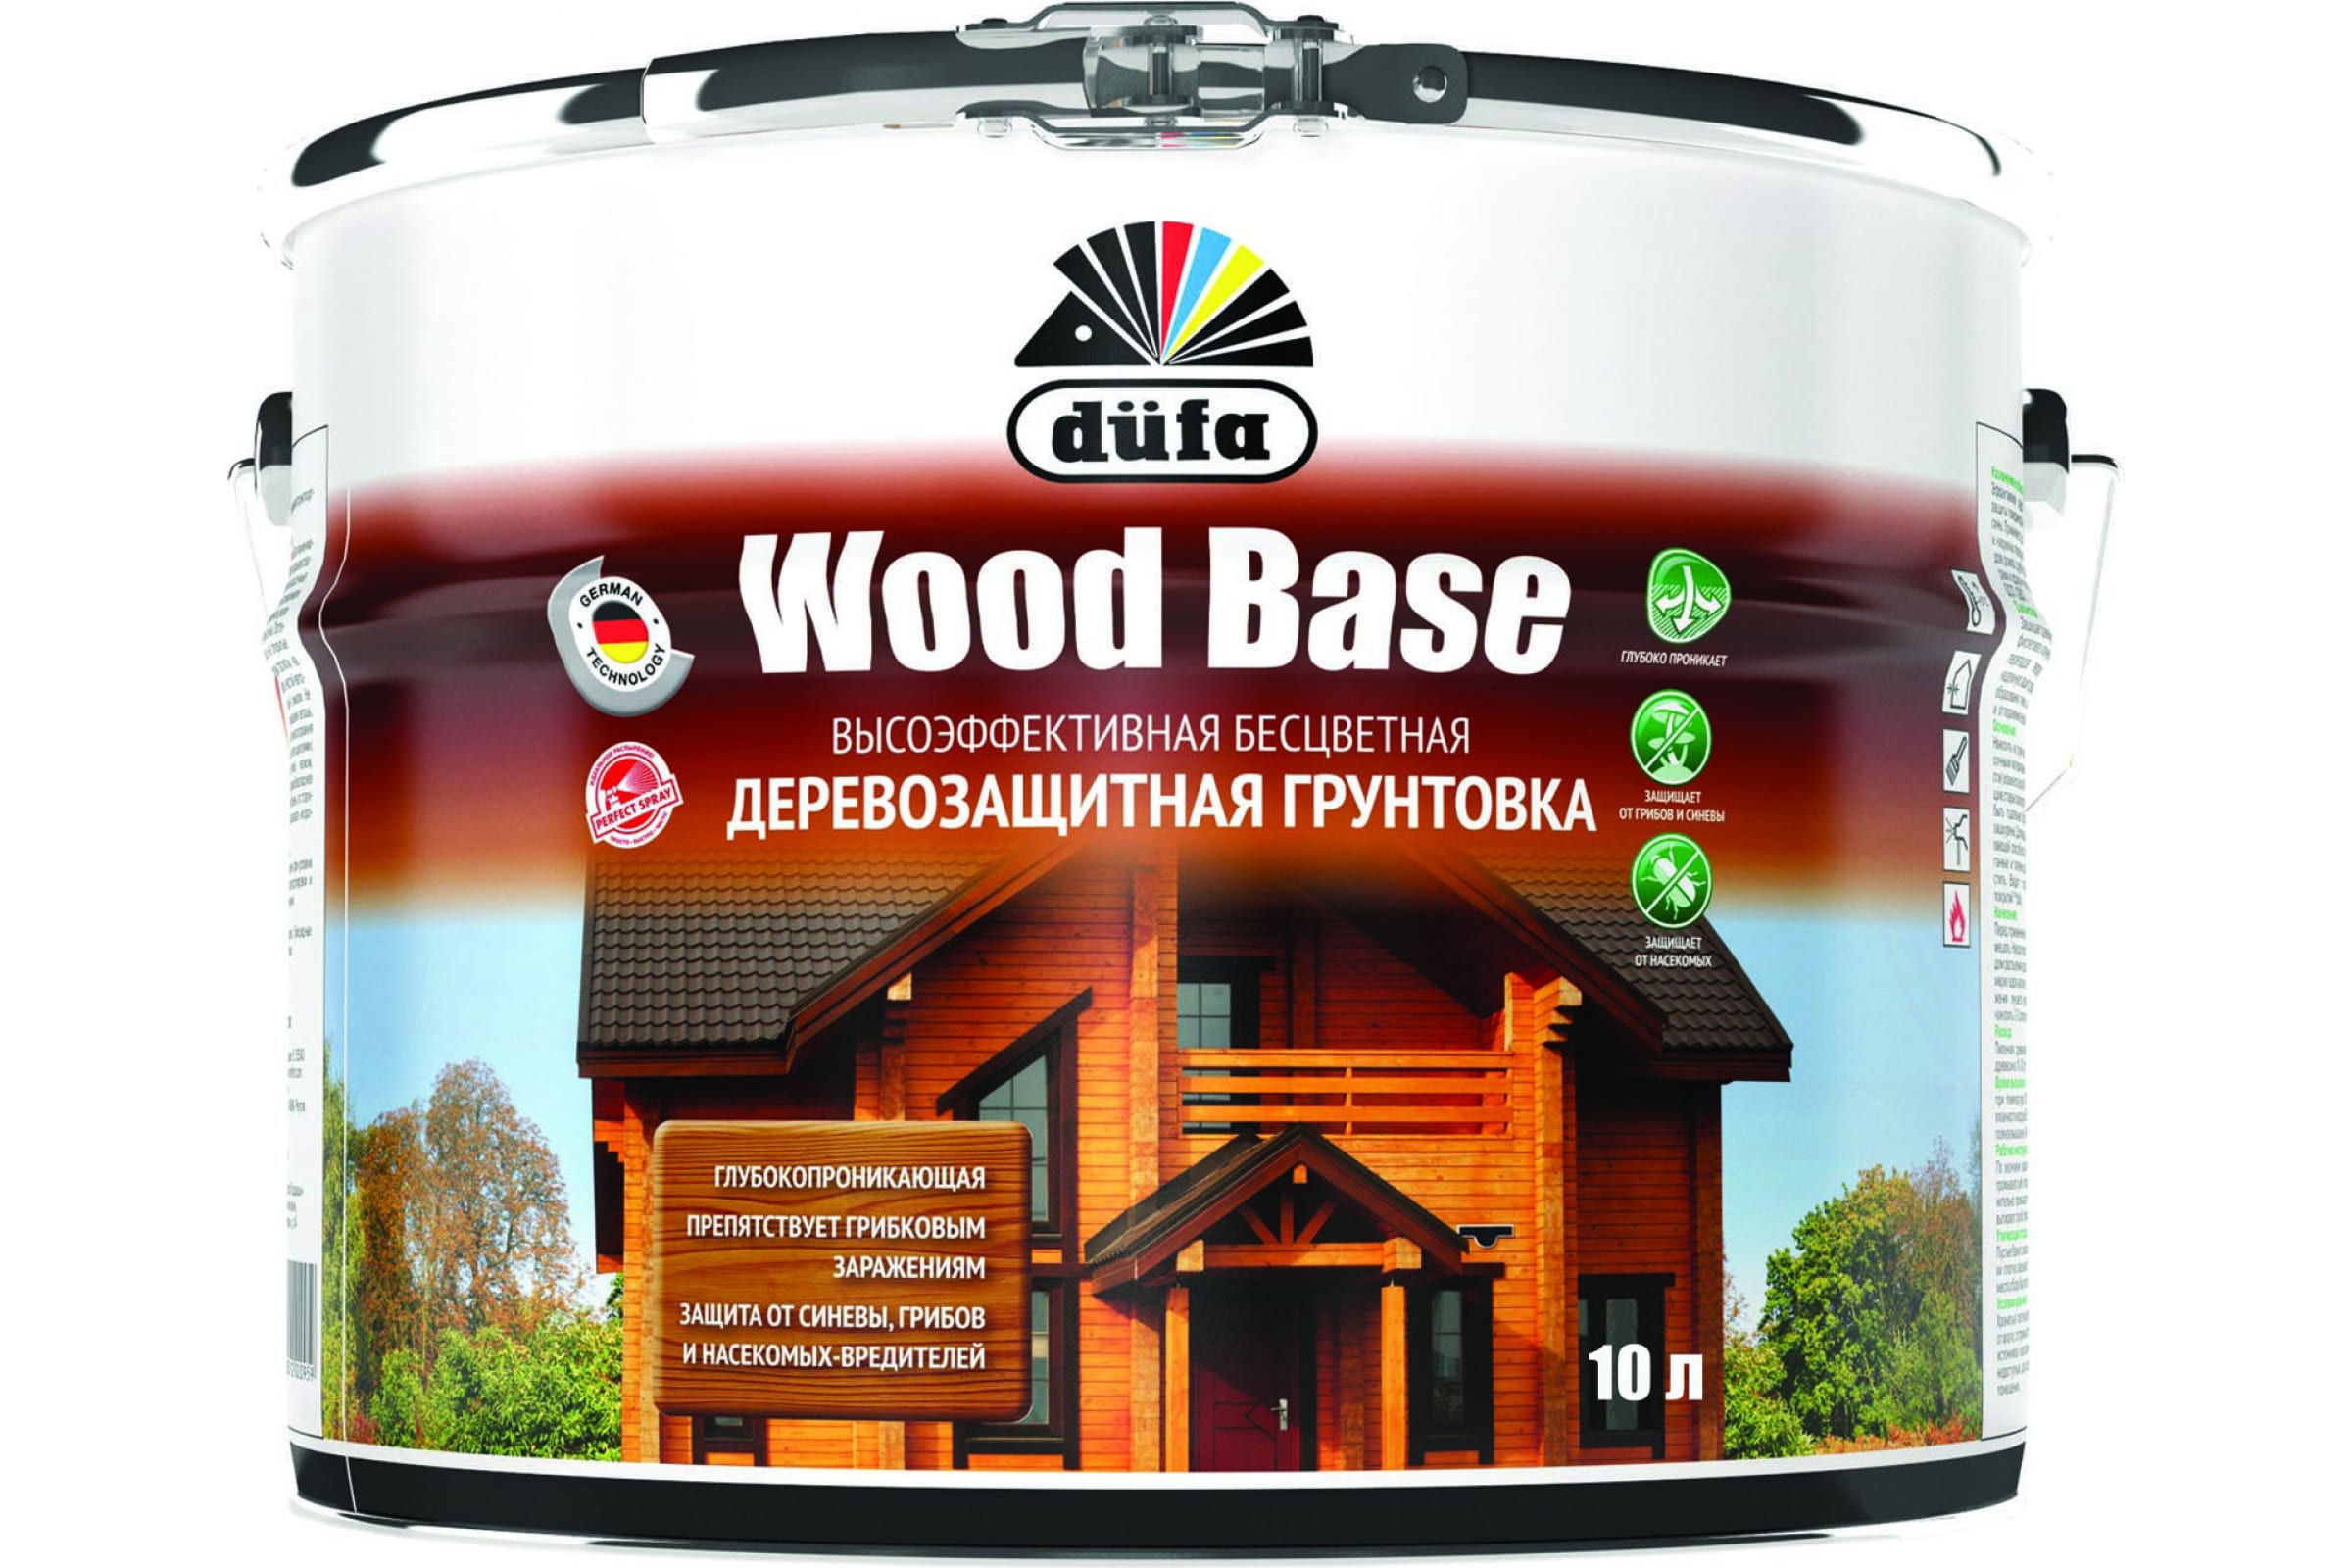 Dufa Грунтовка Wood Base с биоцидом бесцветная 10л Н0000005999